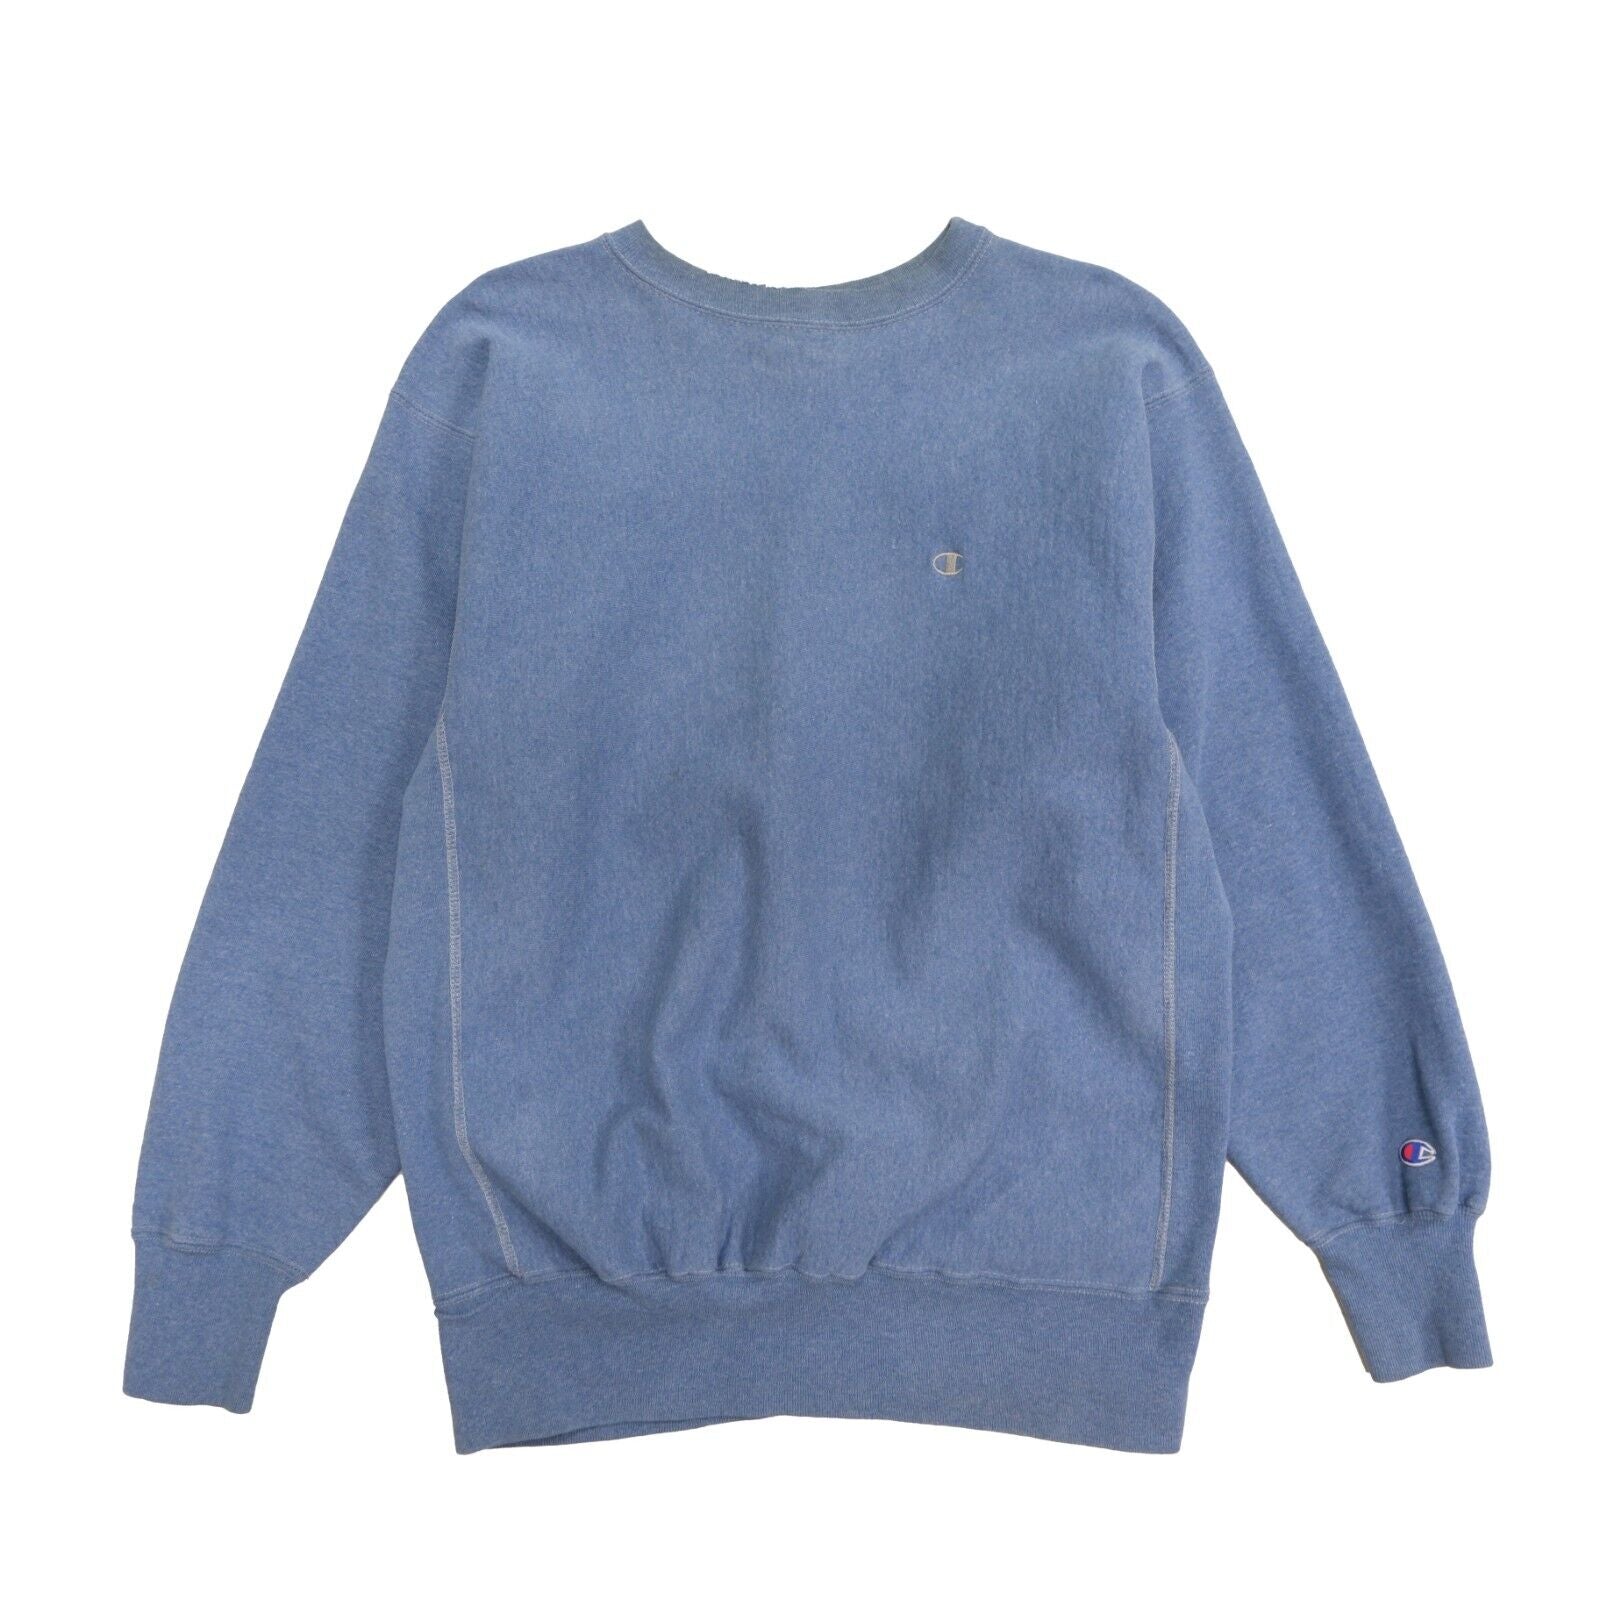 Vintage Champion Reverse Weave Sweatshirt Crewneck Size 2XL Blue